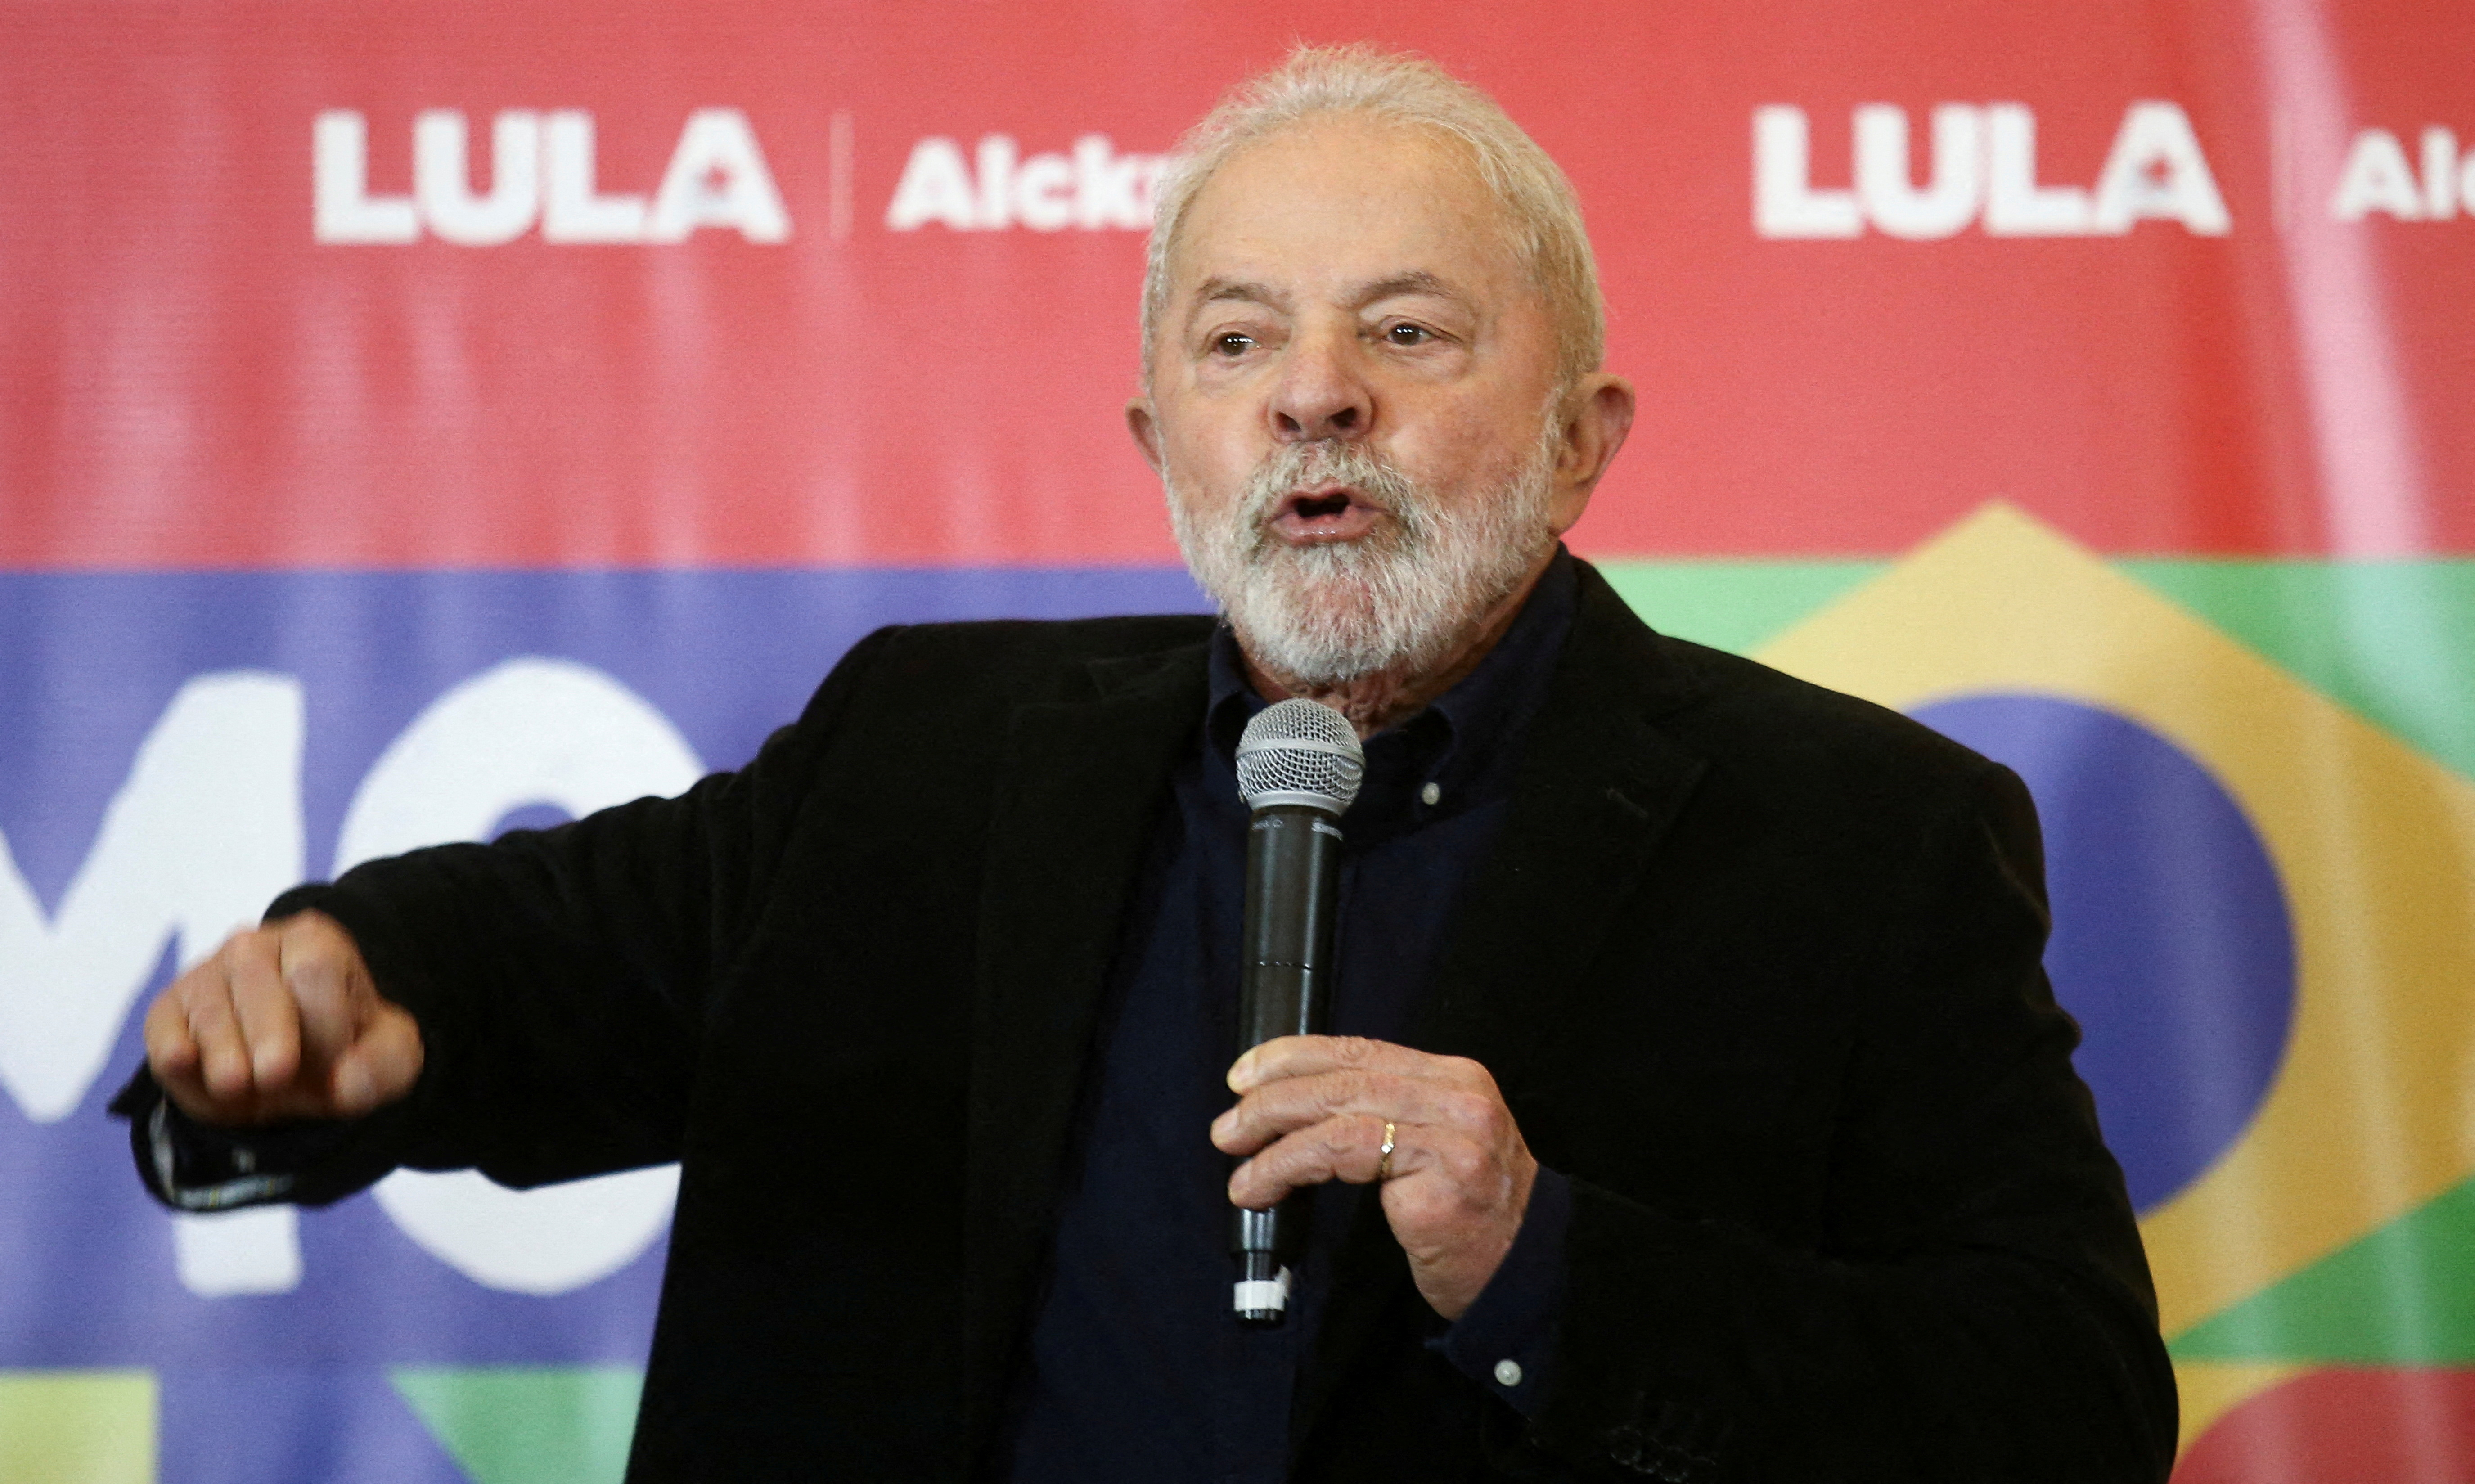 Former Brazil's President Lula da Silva in Sao Paulo